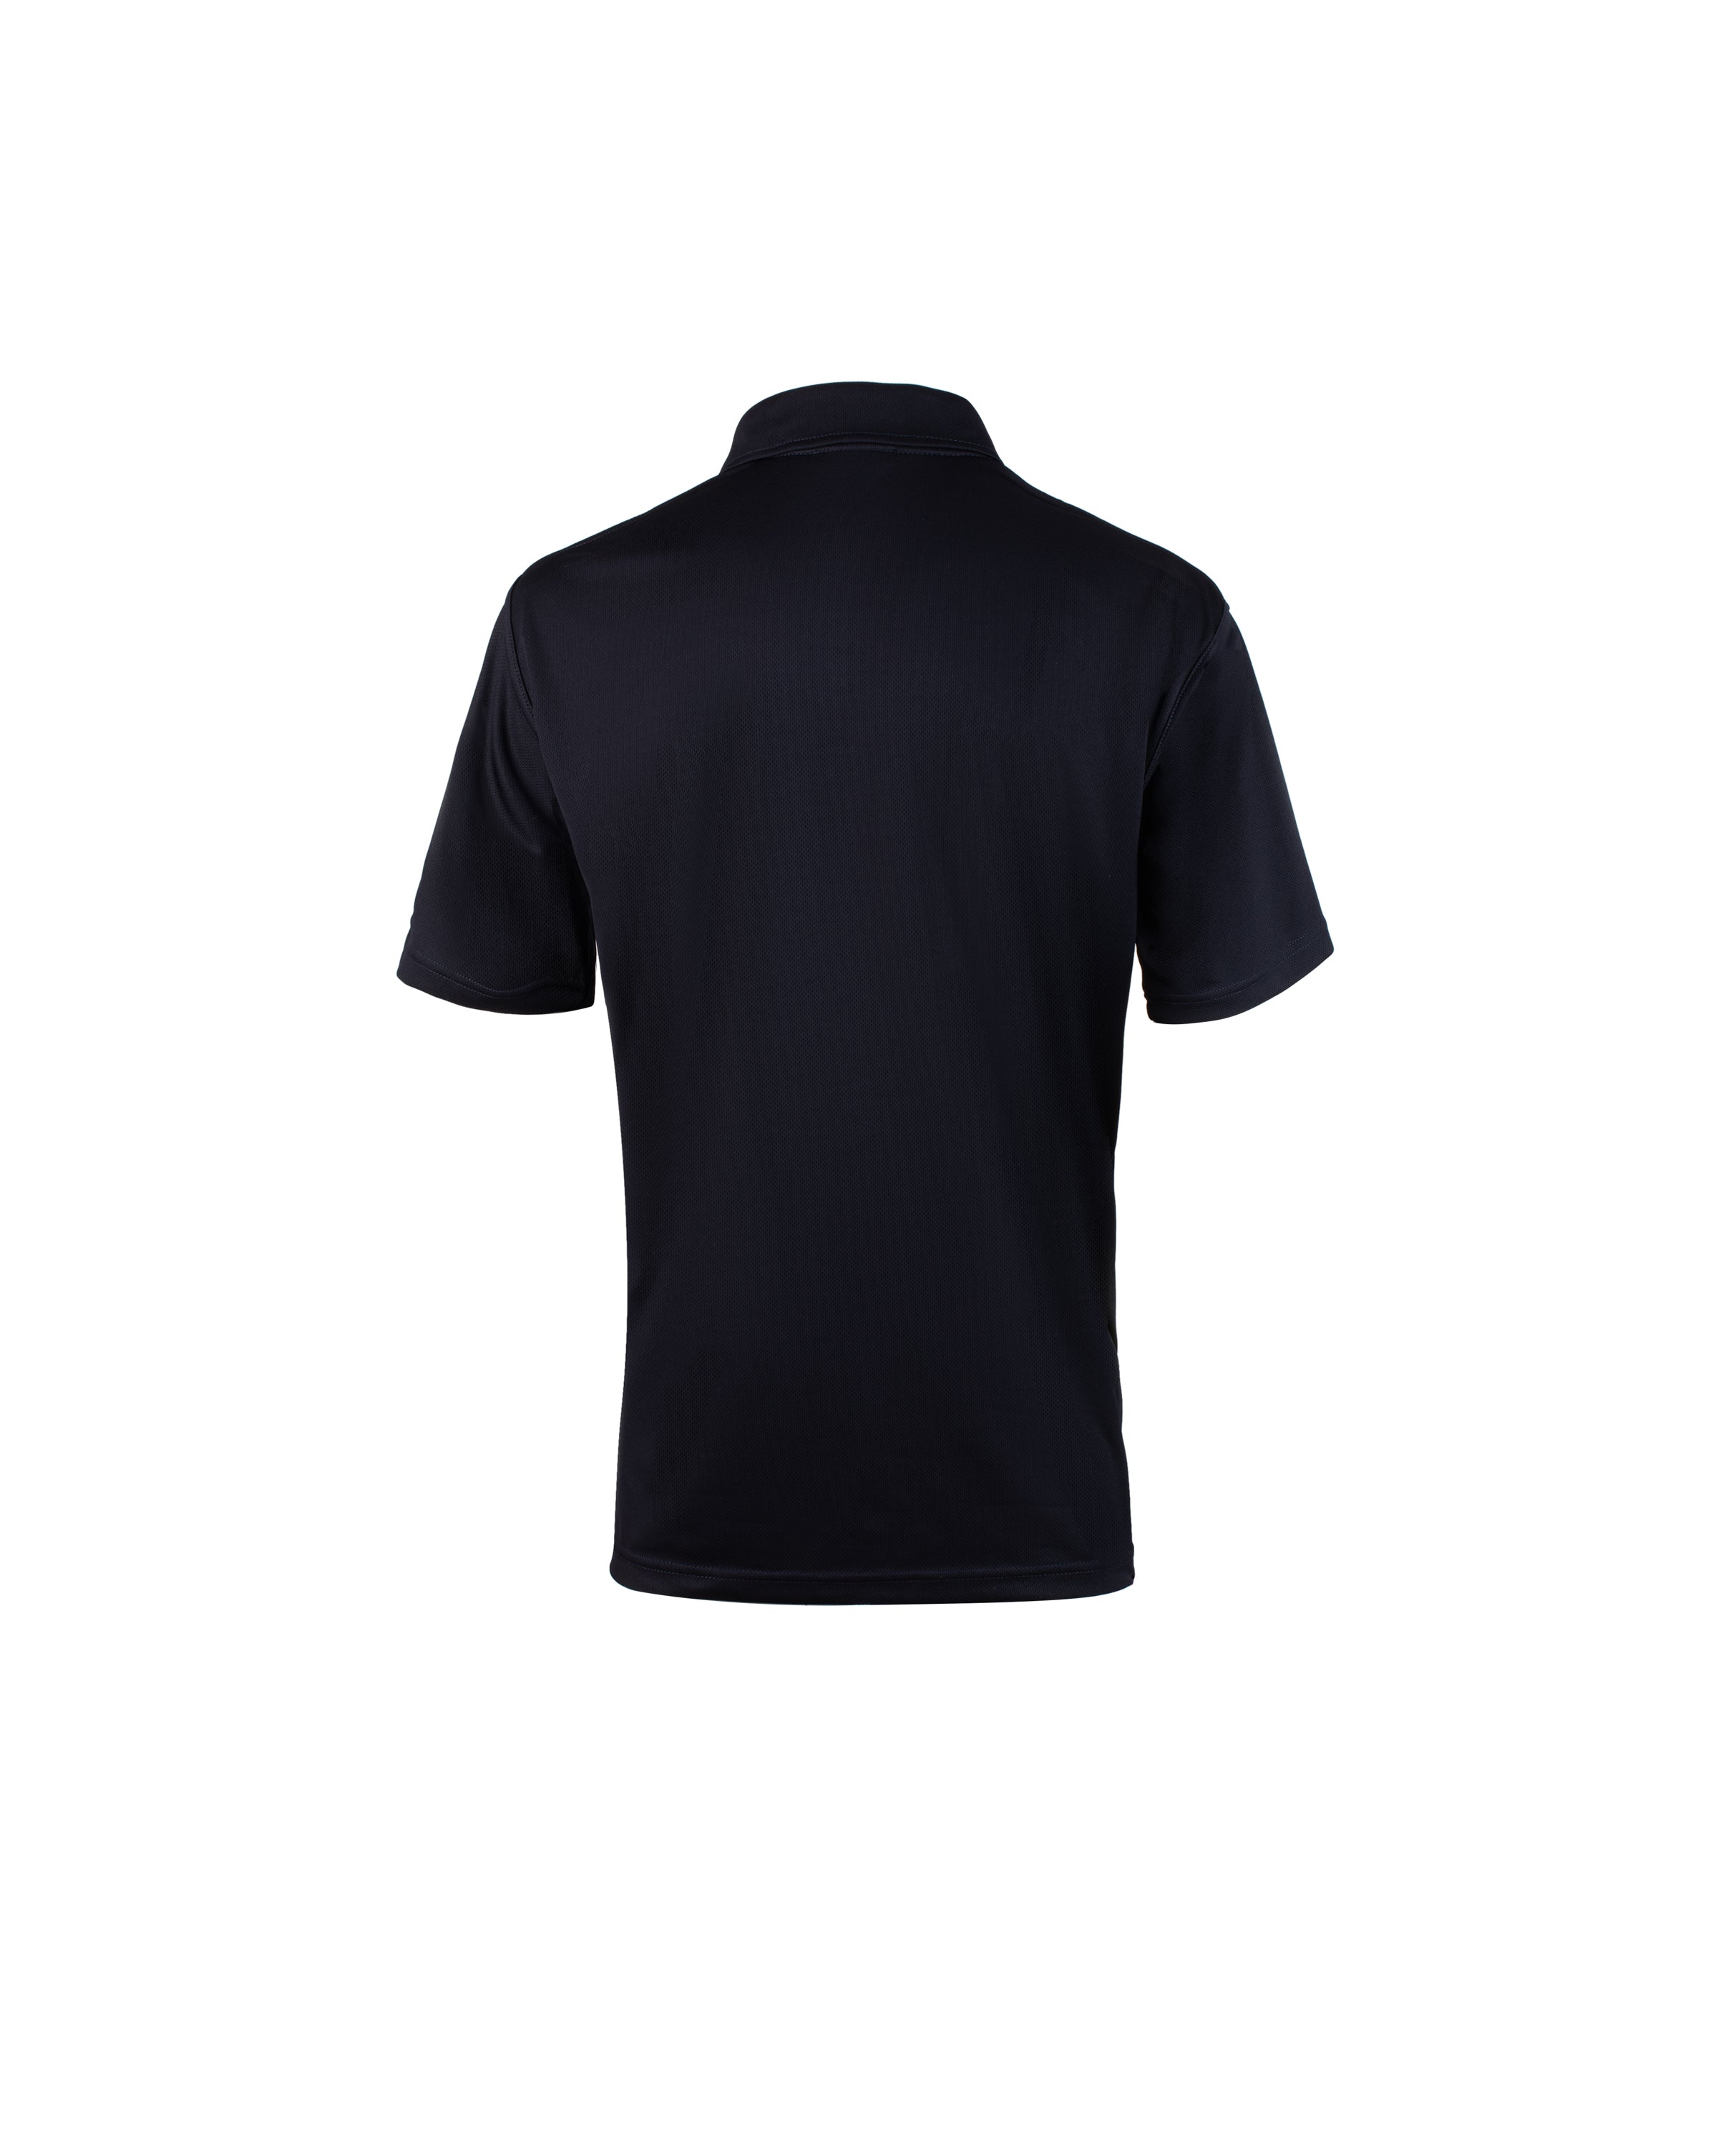 Polo-shirts MC technique modèle Unisexe 100% polyester - 400824